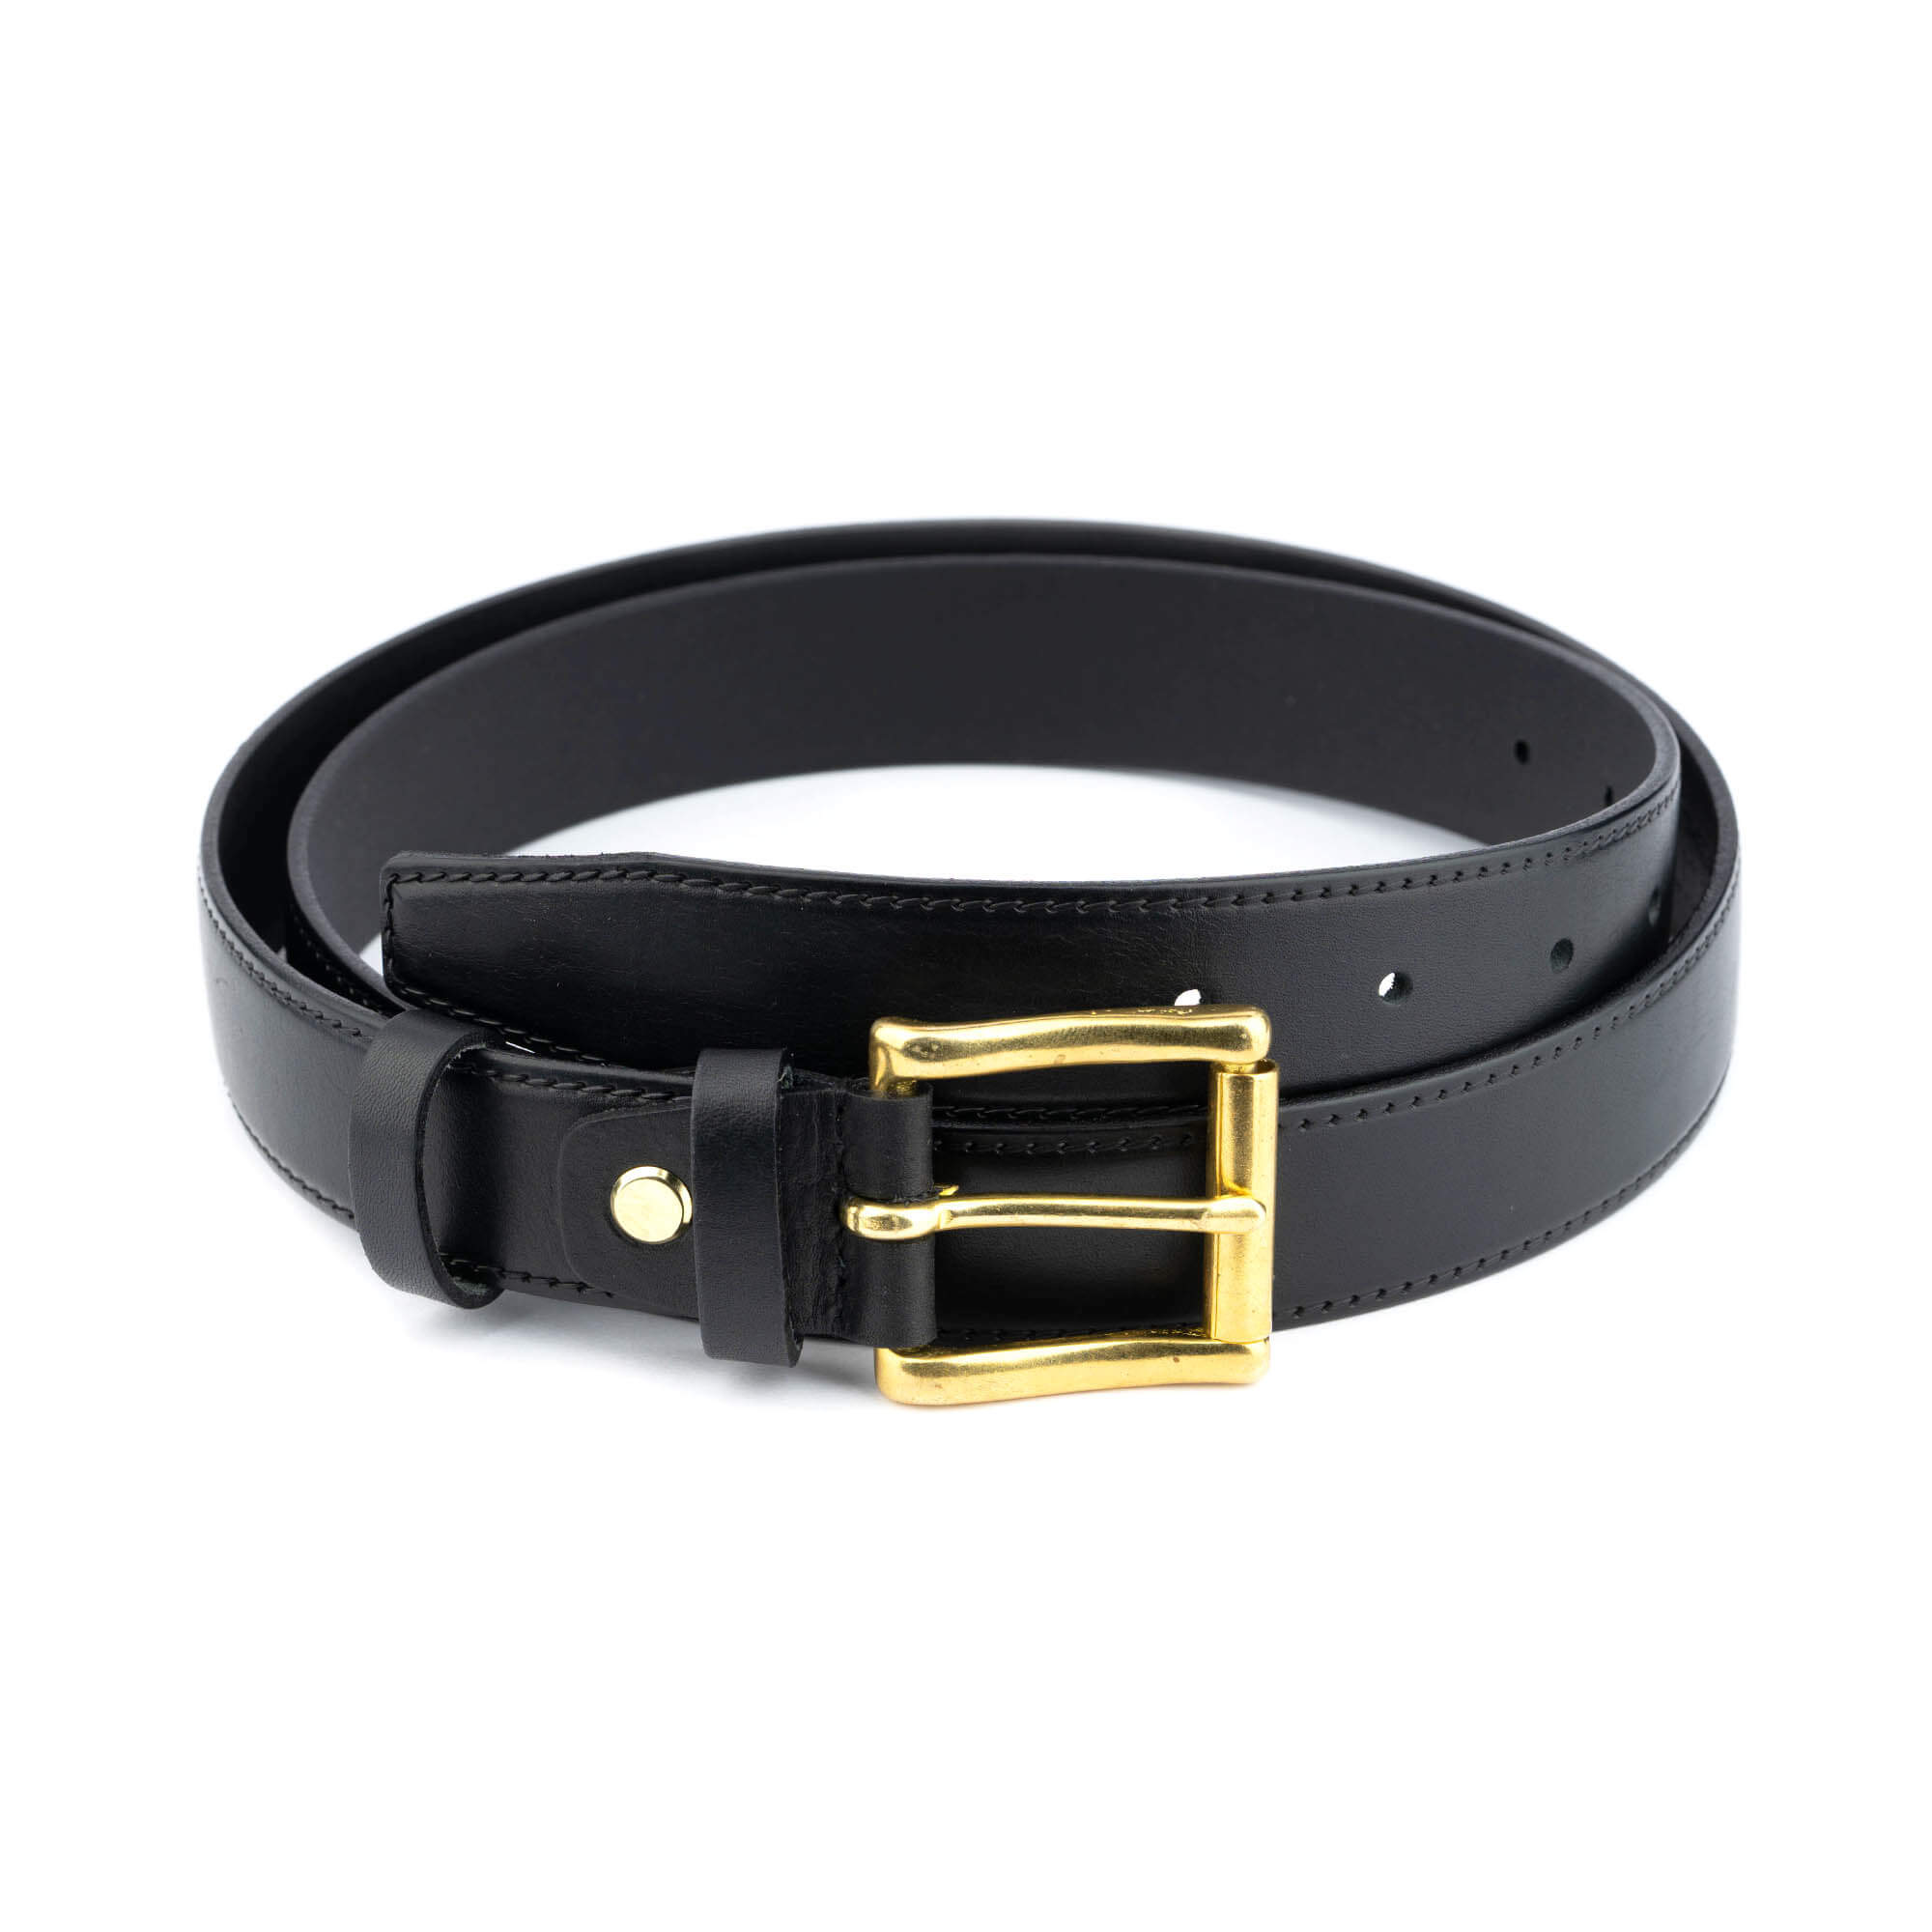 https://leatherbeltsonline.com/wp-content/uploads/2022/04/Gold-Brass-Buckle-Belt-Black-Full-Grain-Leather-3.0-cm-1.jpg